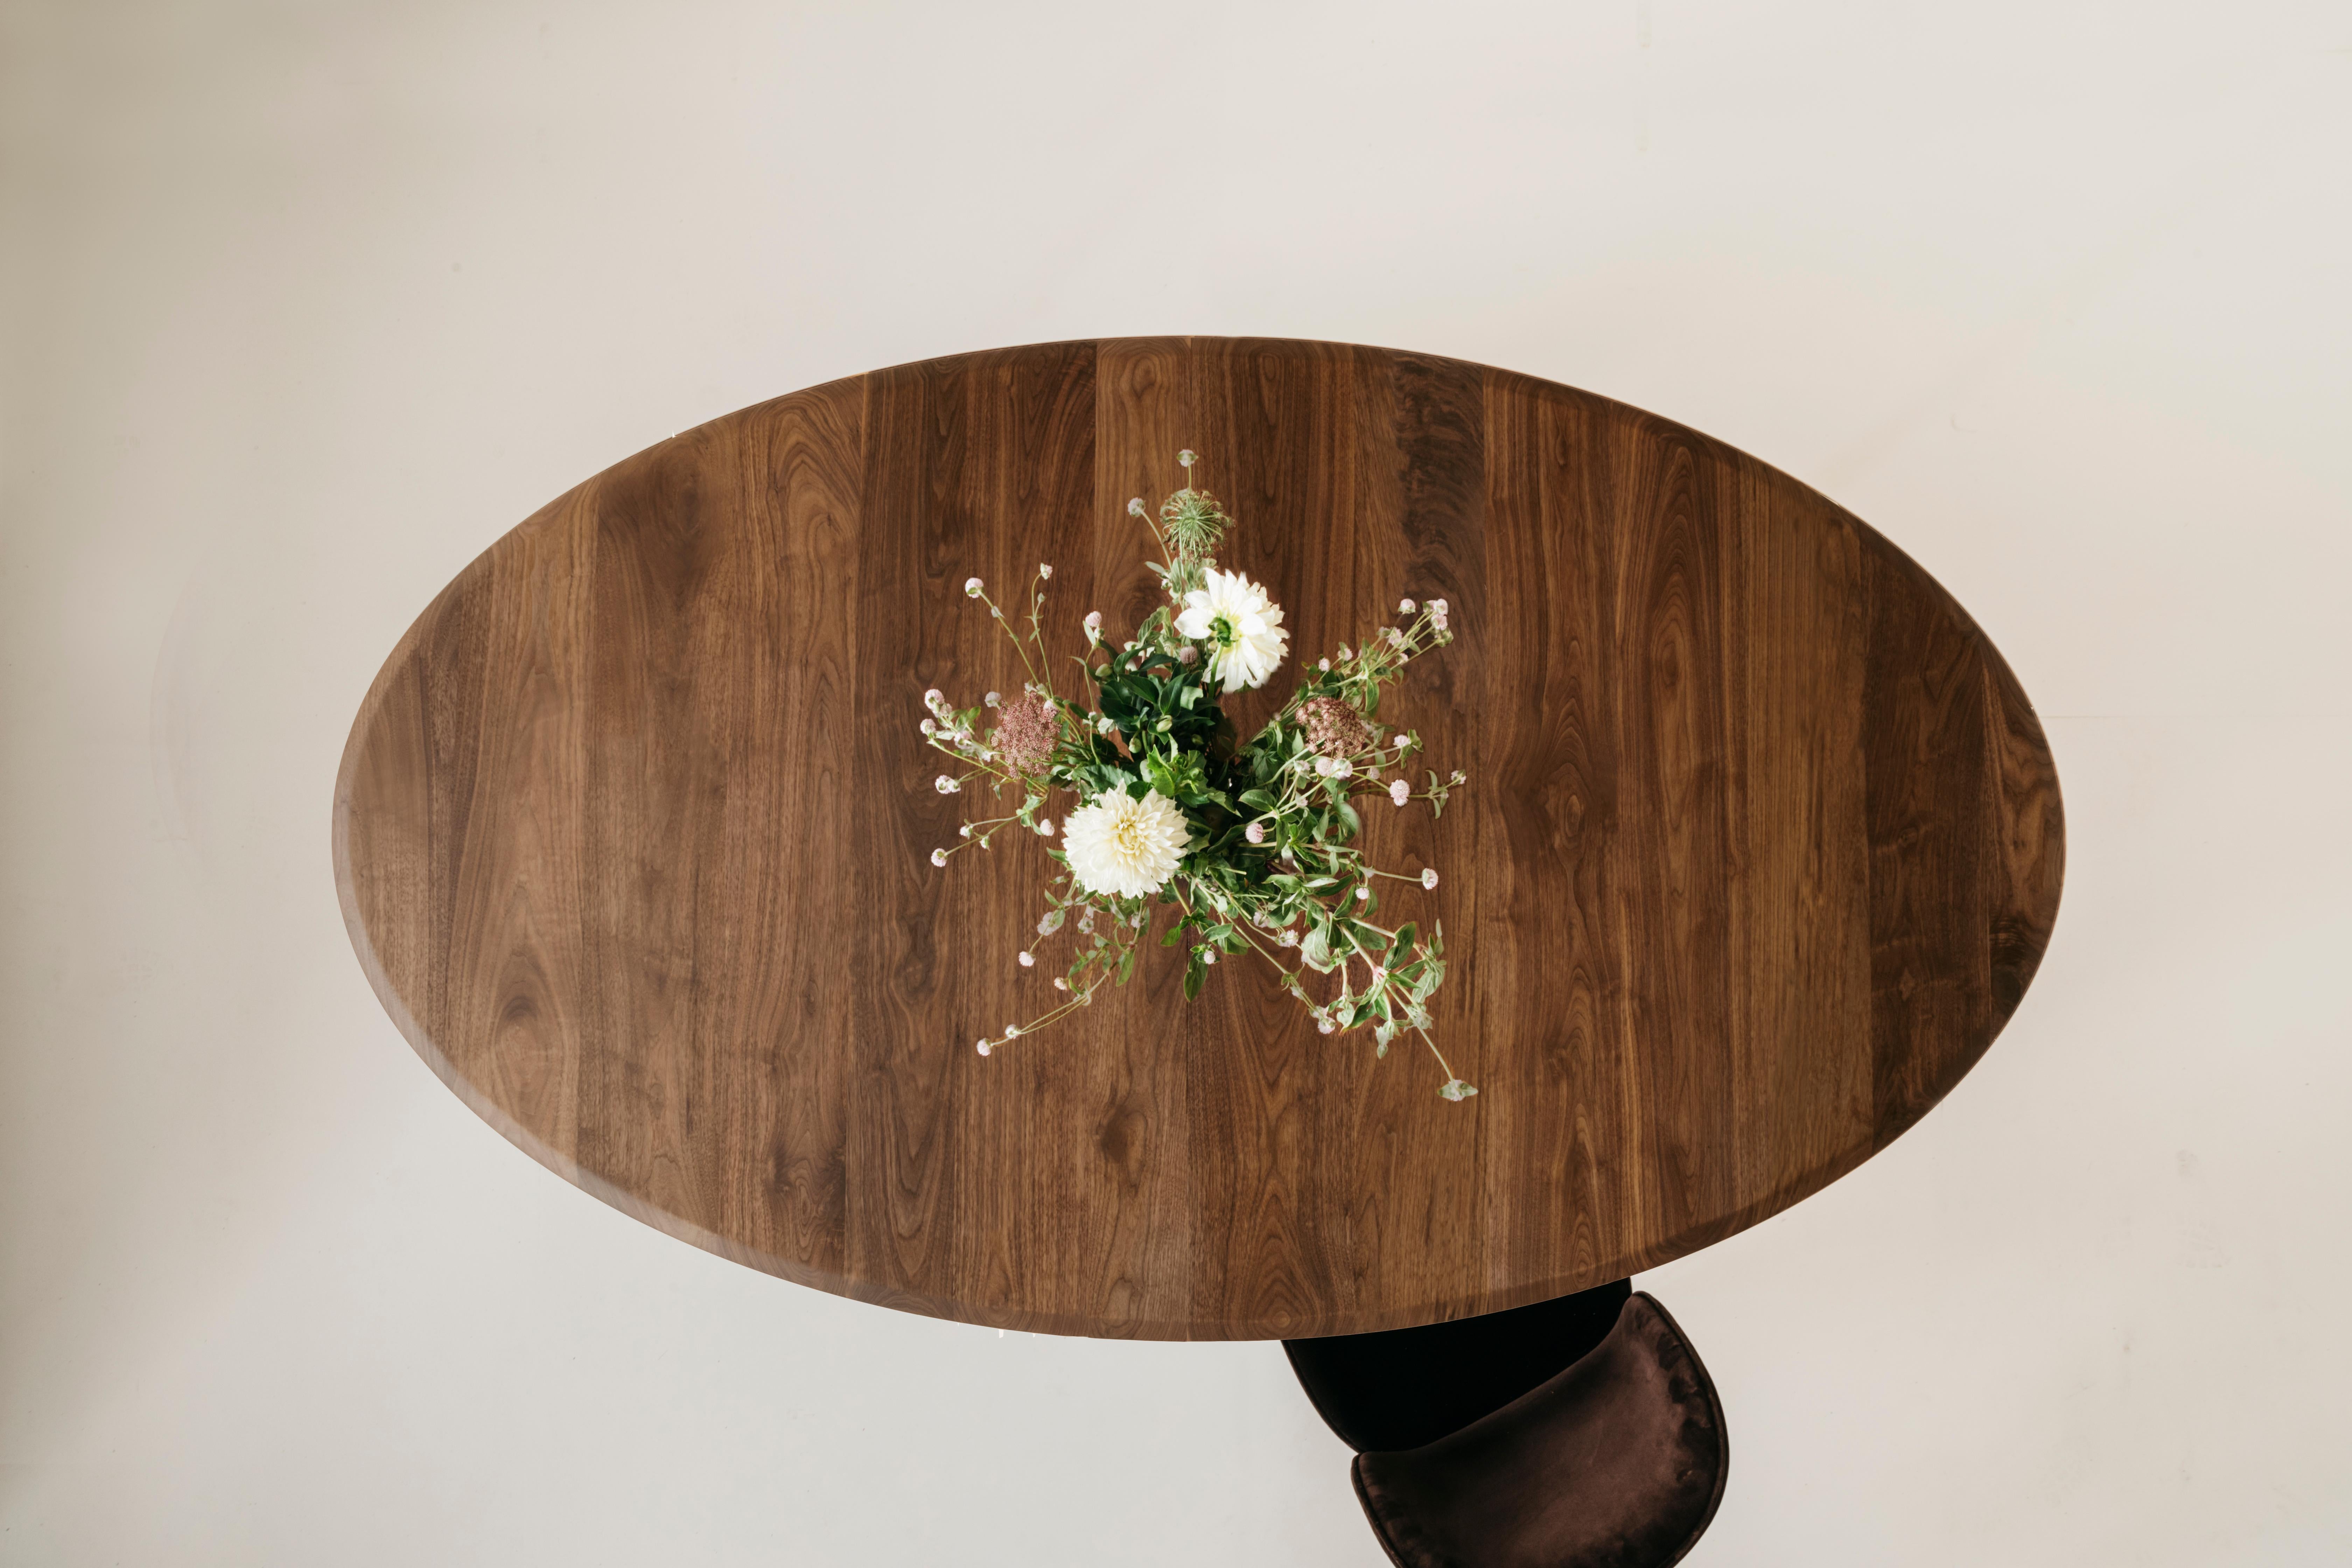 Der ovale Esstisch Richard Watson bietet eine bequeme, intime Form, um mit anderen zu speisen. Dieser Tisch kann mit Hilfe von reibungslosen Verlängerungsbeschlägen erweitert werden, so dass er eine 20-Zoll-Platte aufnehmen kann.

Jedes Stück von